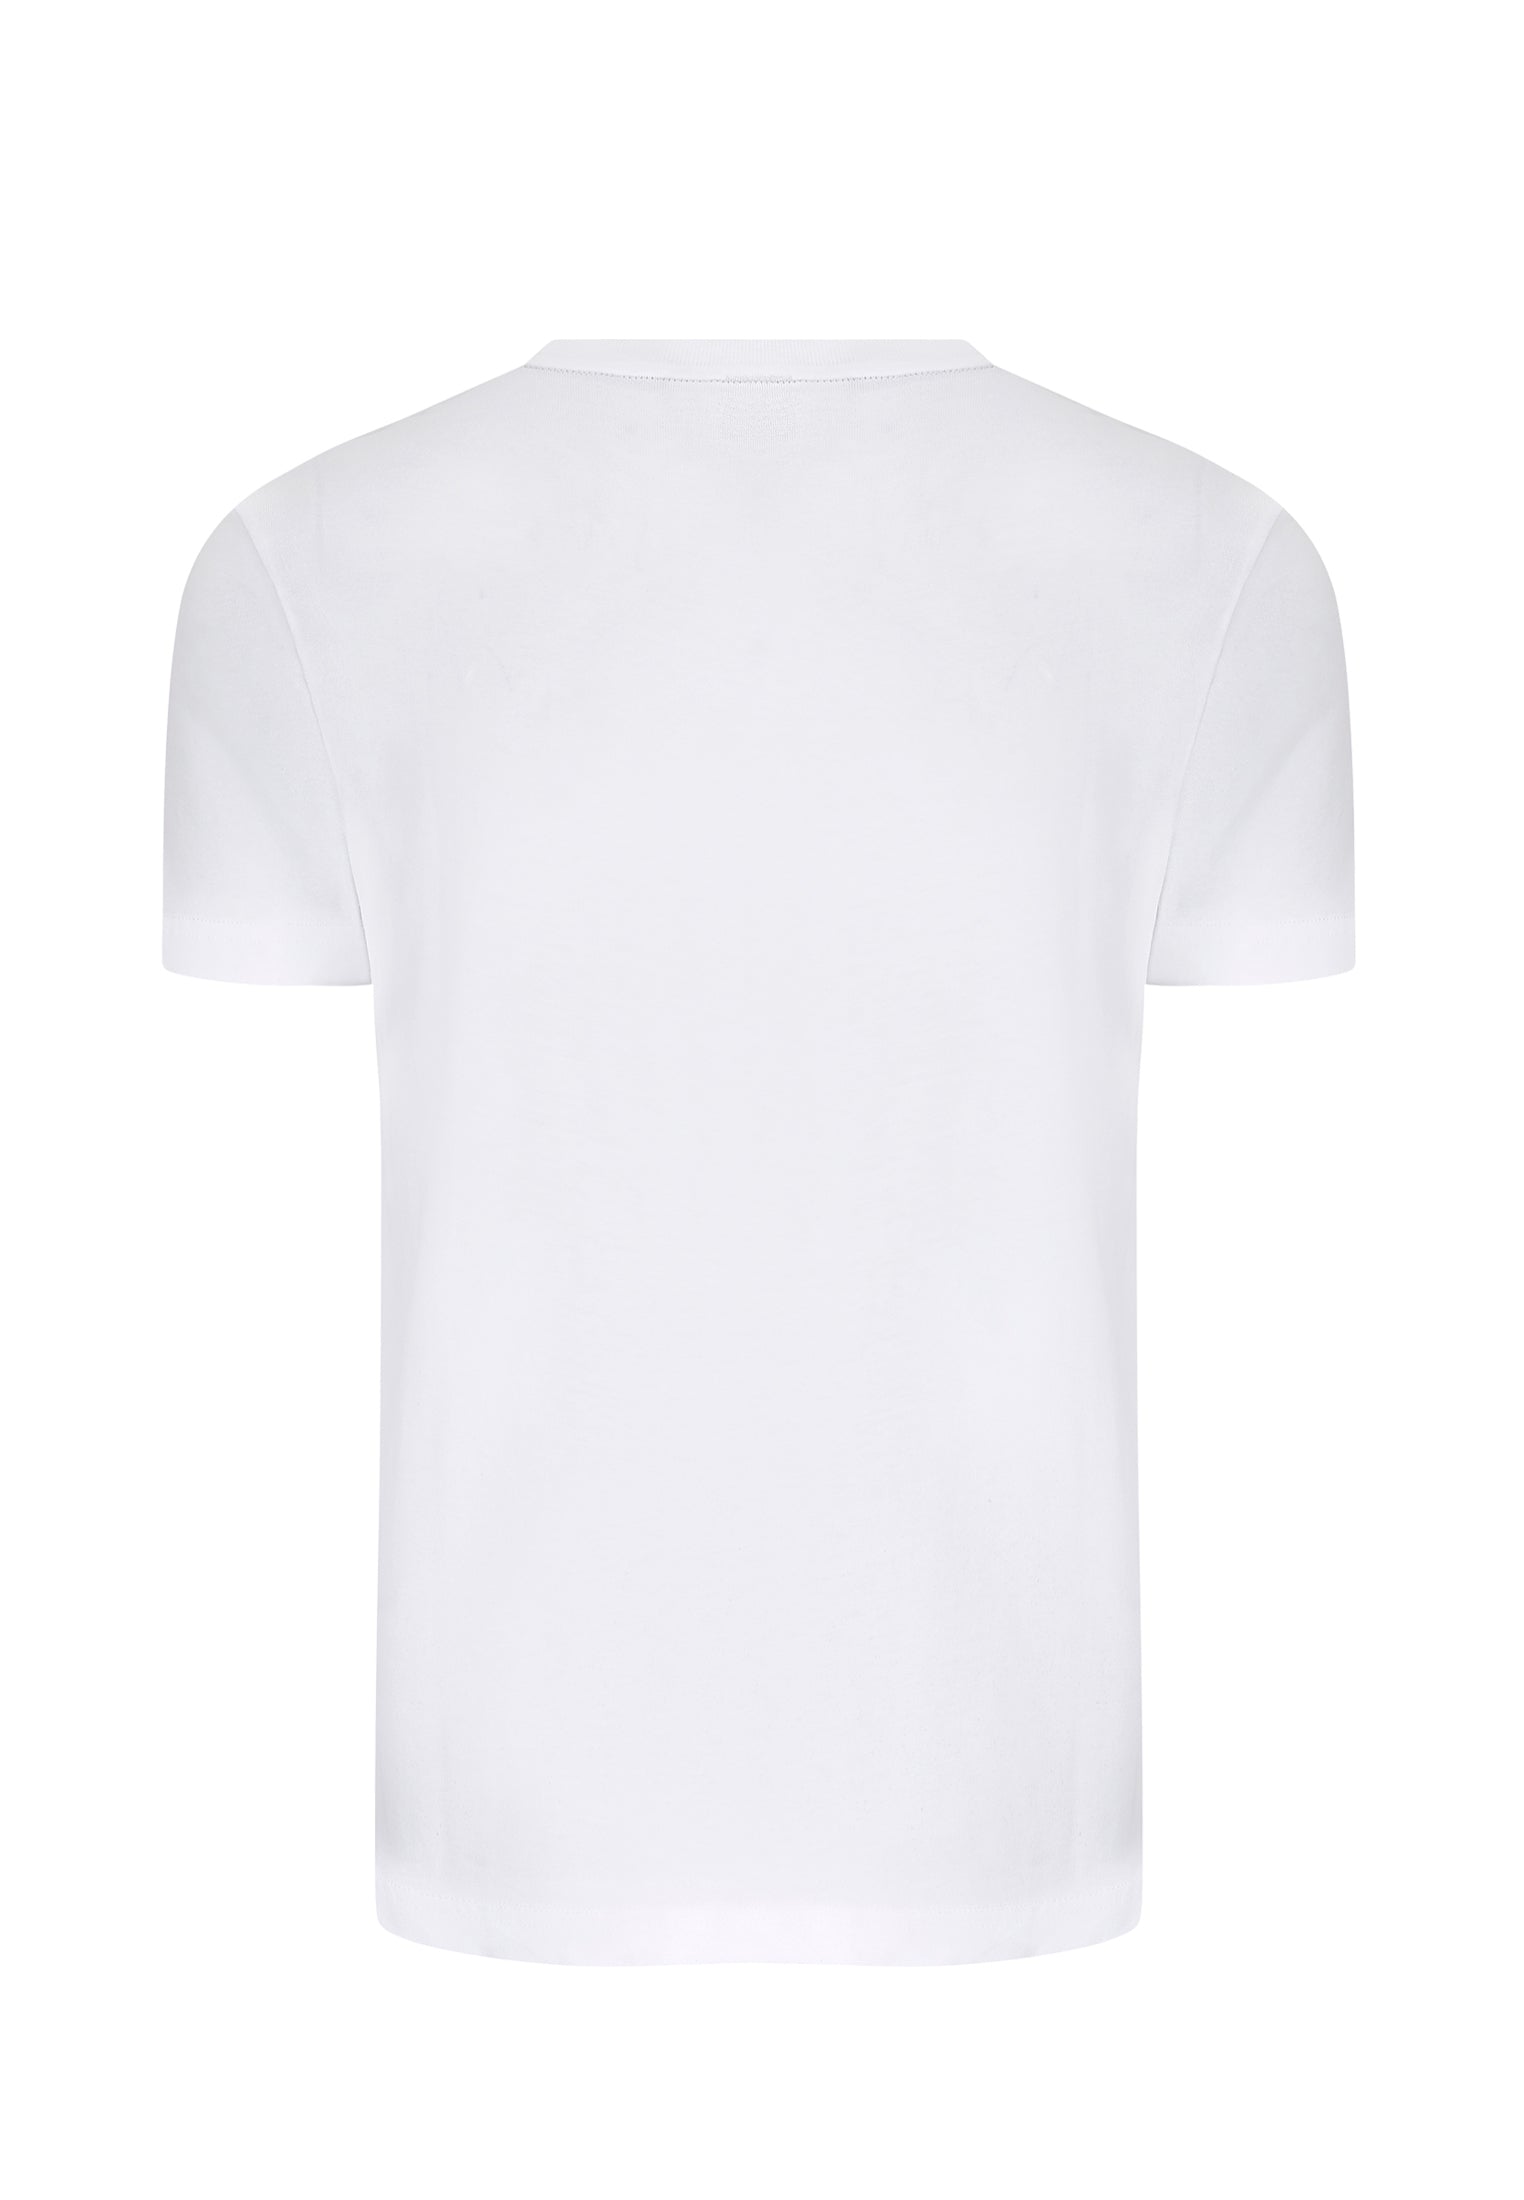 Belmont Racer Stripe Men's T-Shirt In White